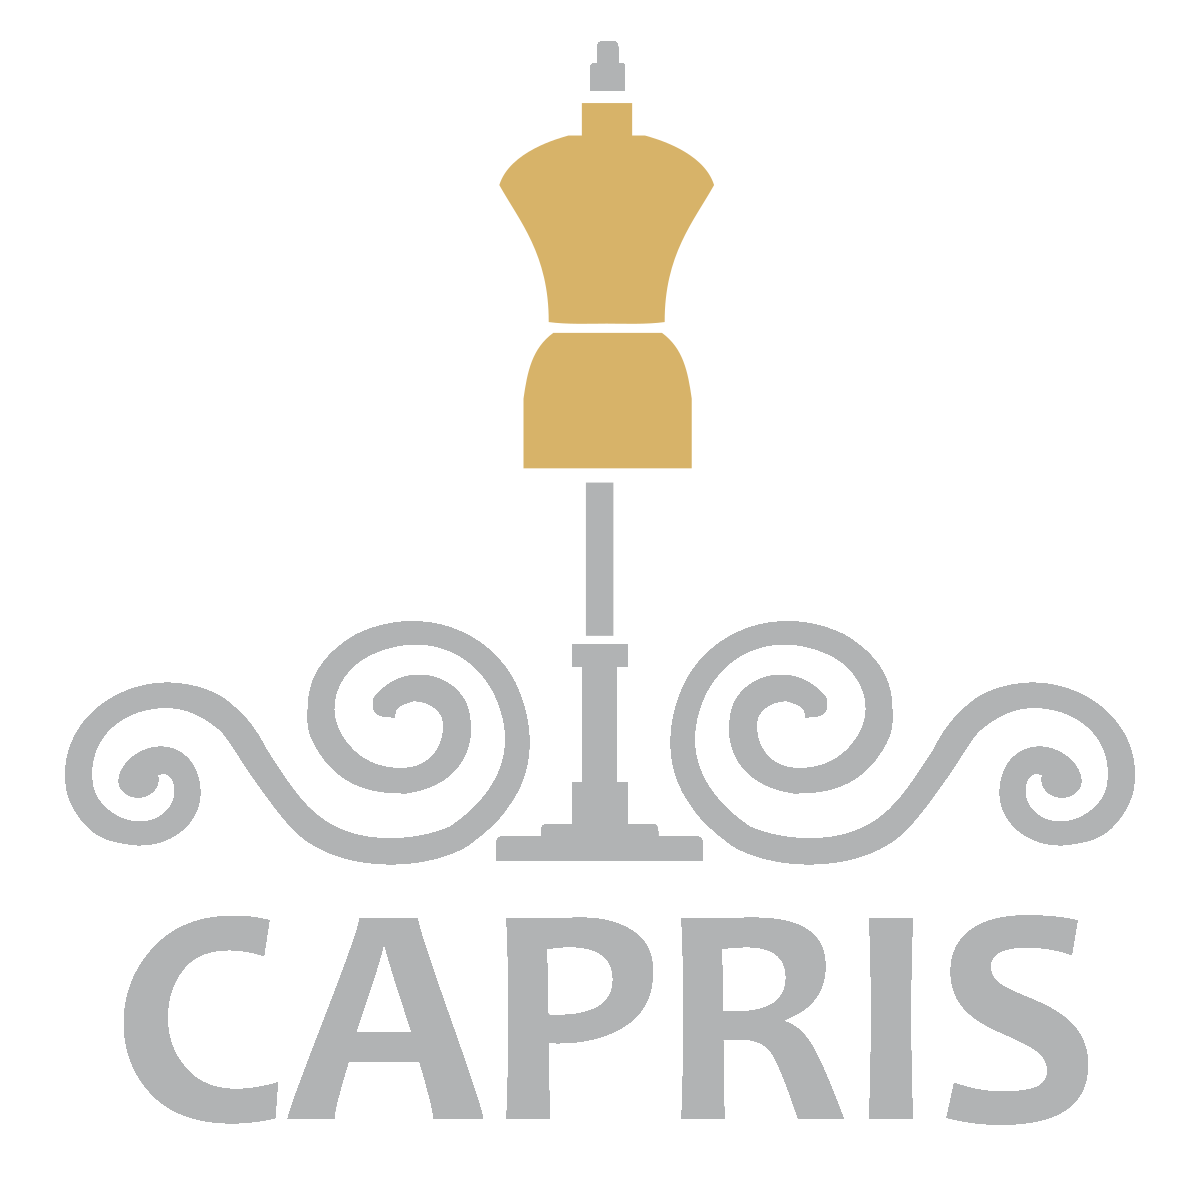 Krawiec Capris